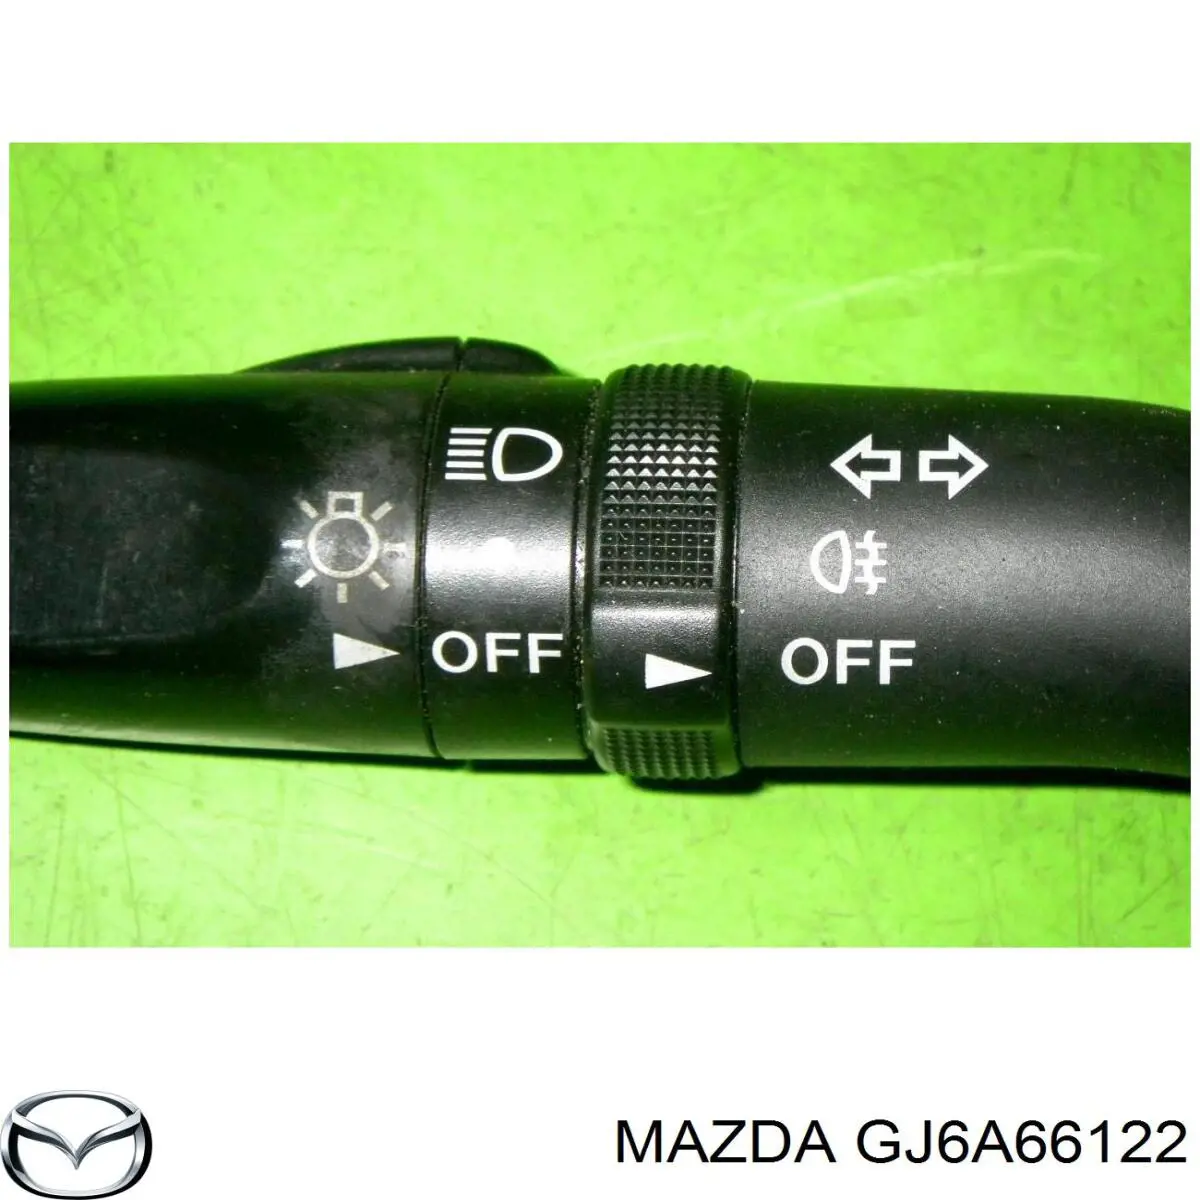 GJ6A66122 Mazda conmutador en la columna de dirección izquierdo